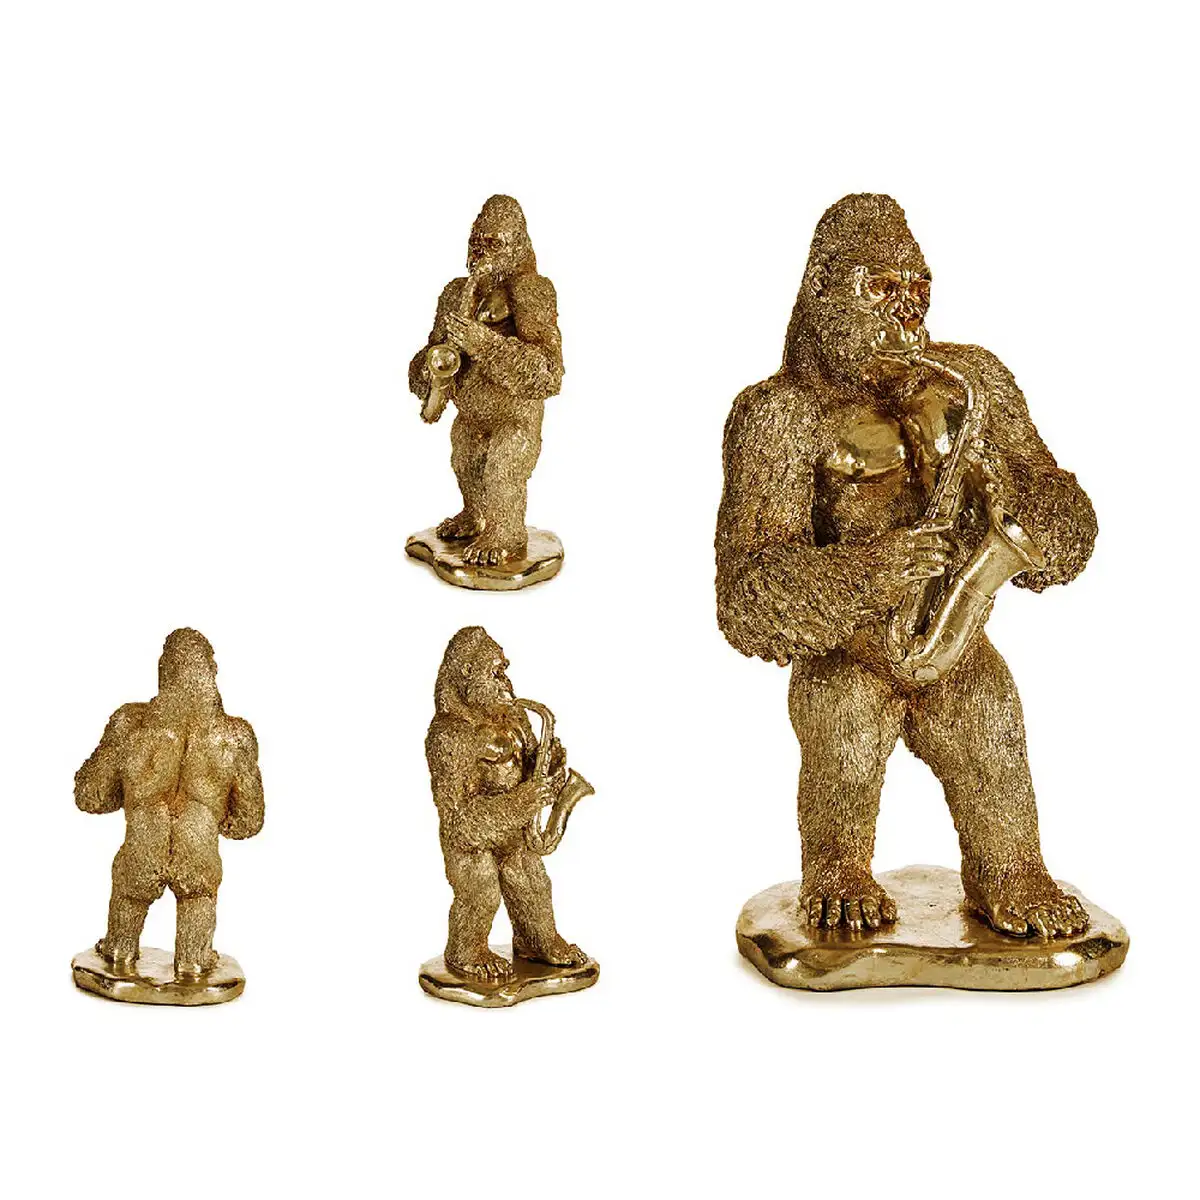 Figurine decorative gorille saxophone dore 18 5 x 38 8 x 22 cm_9096. Plongez dans l'Univers de DIAYTAR SENEGAL - Où la Qualité et la Diversité se rencontrent. Parcourez nos rayons virtuels pour trouver des produits répondant à tous les besoins, du confort de votre foyer.